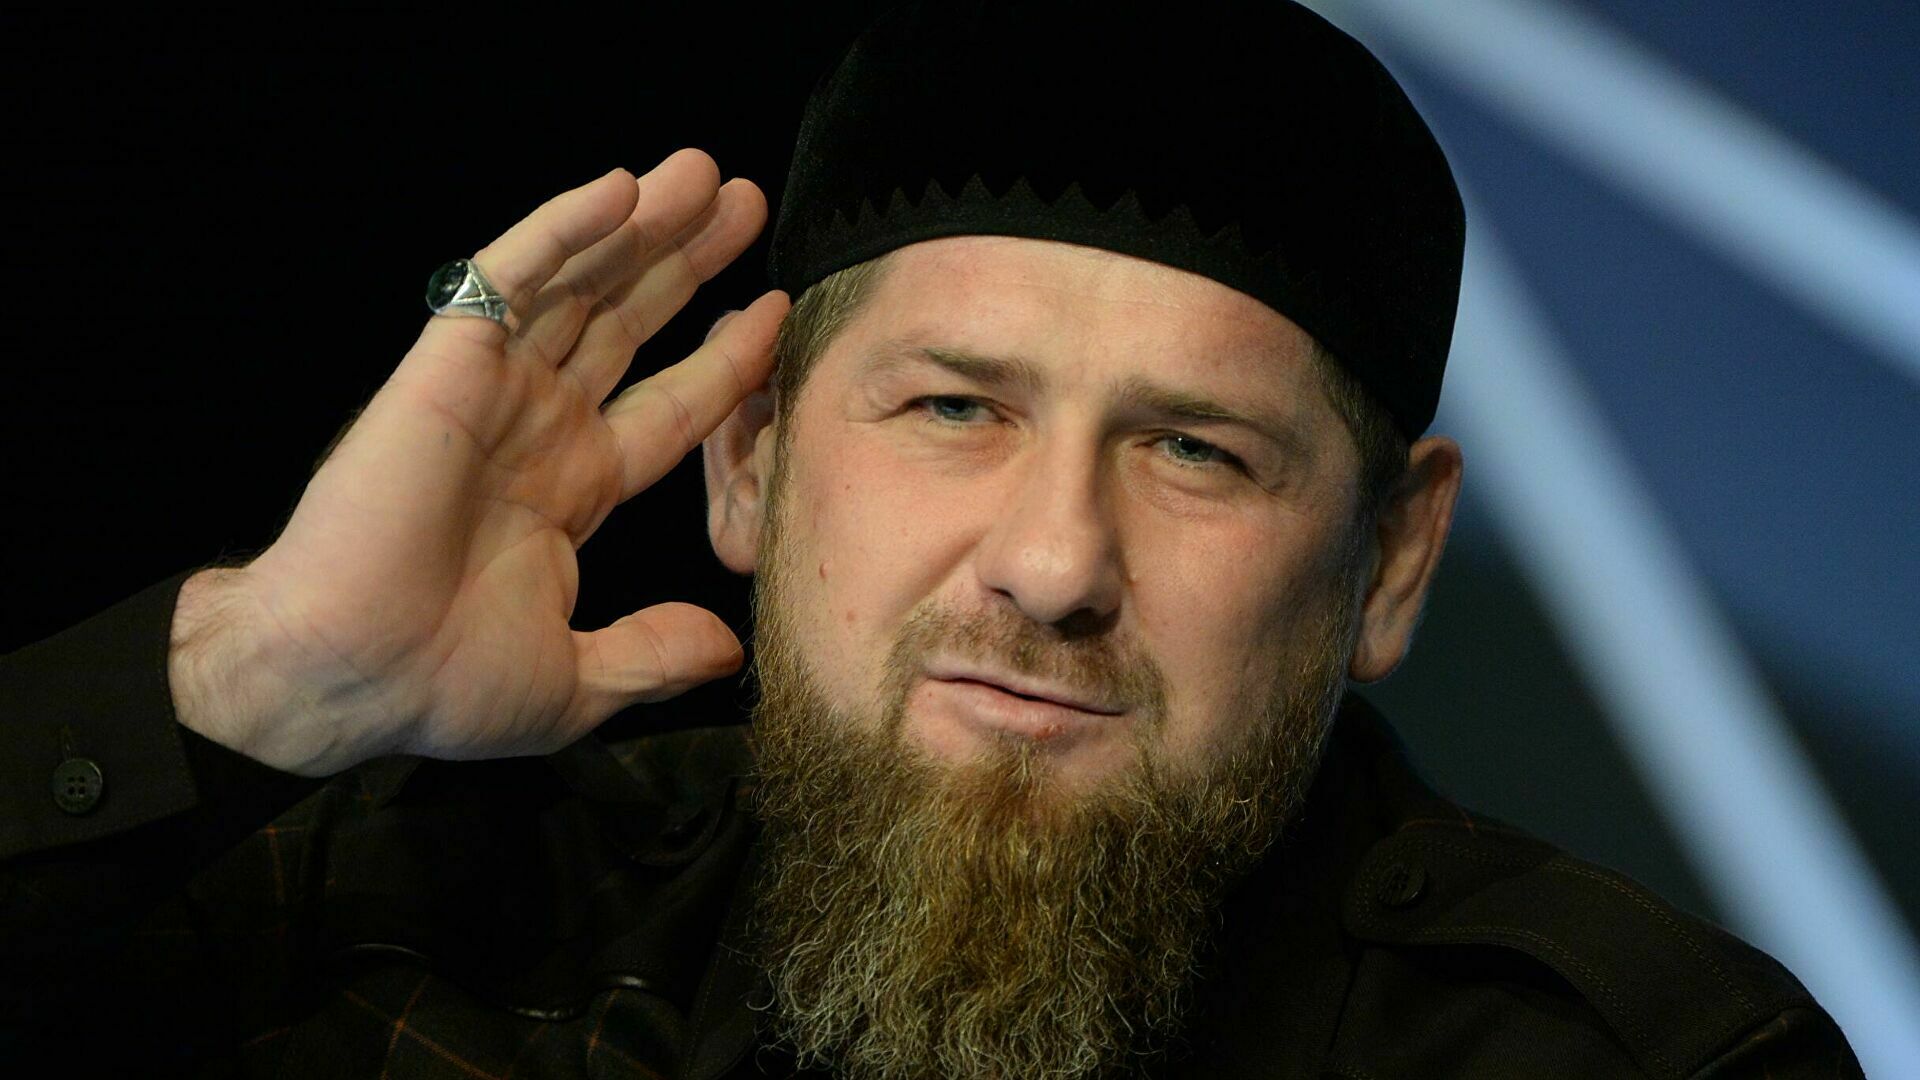 Телеканал «Грозный» присудил Рамзану Кадырову денежную премию как «репортеру»